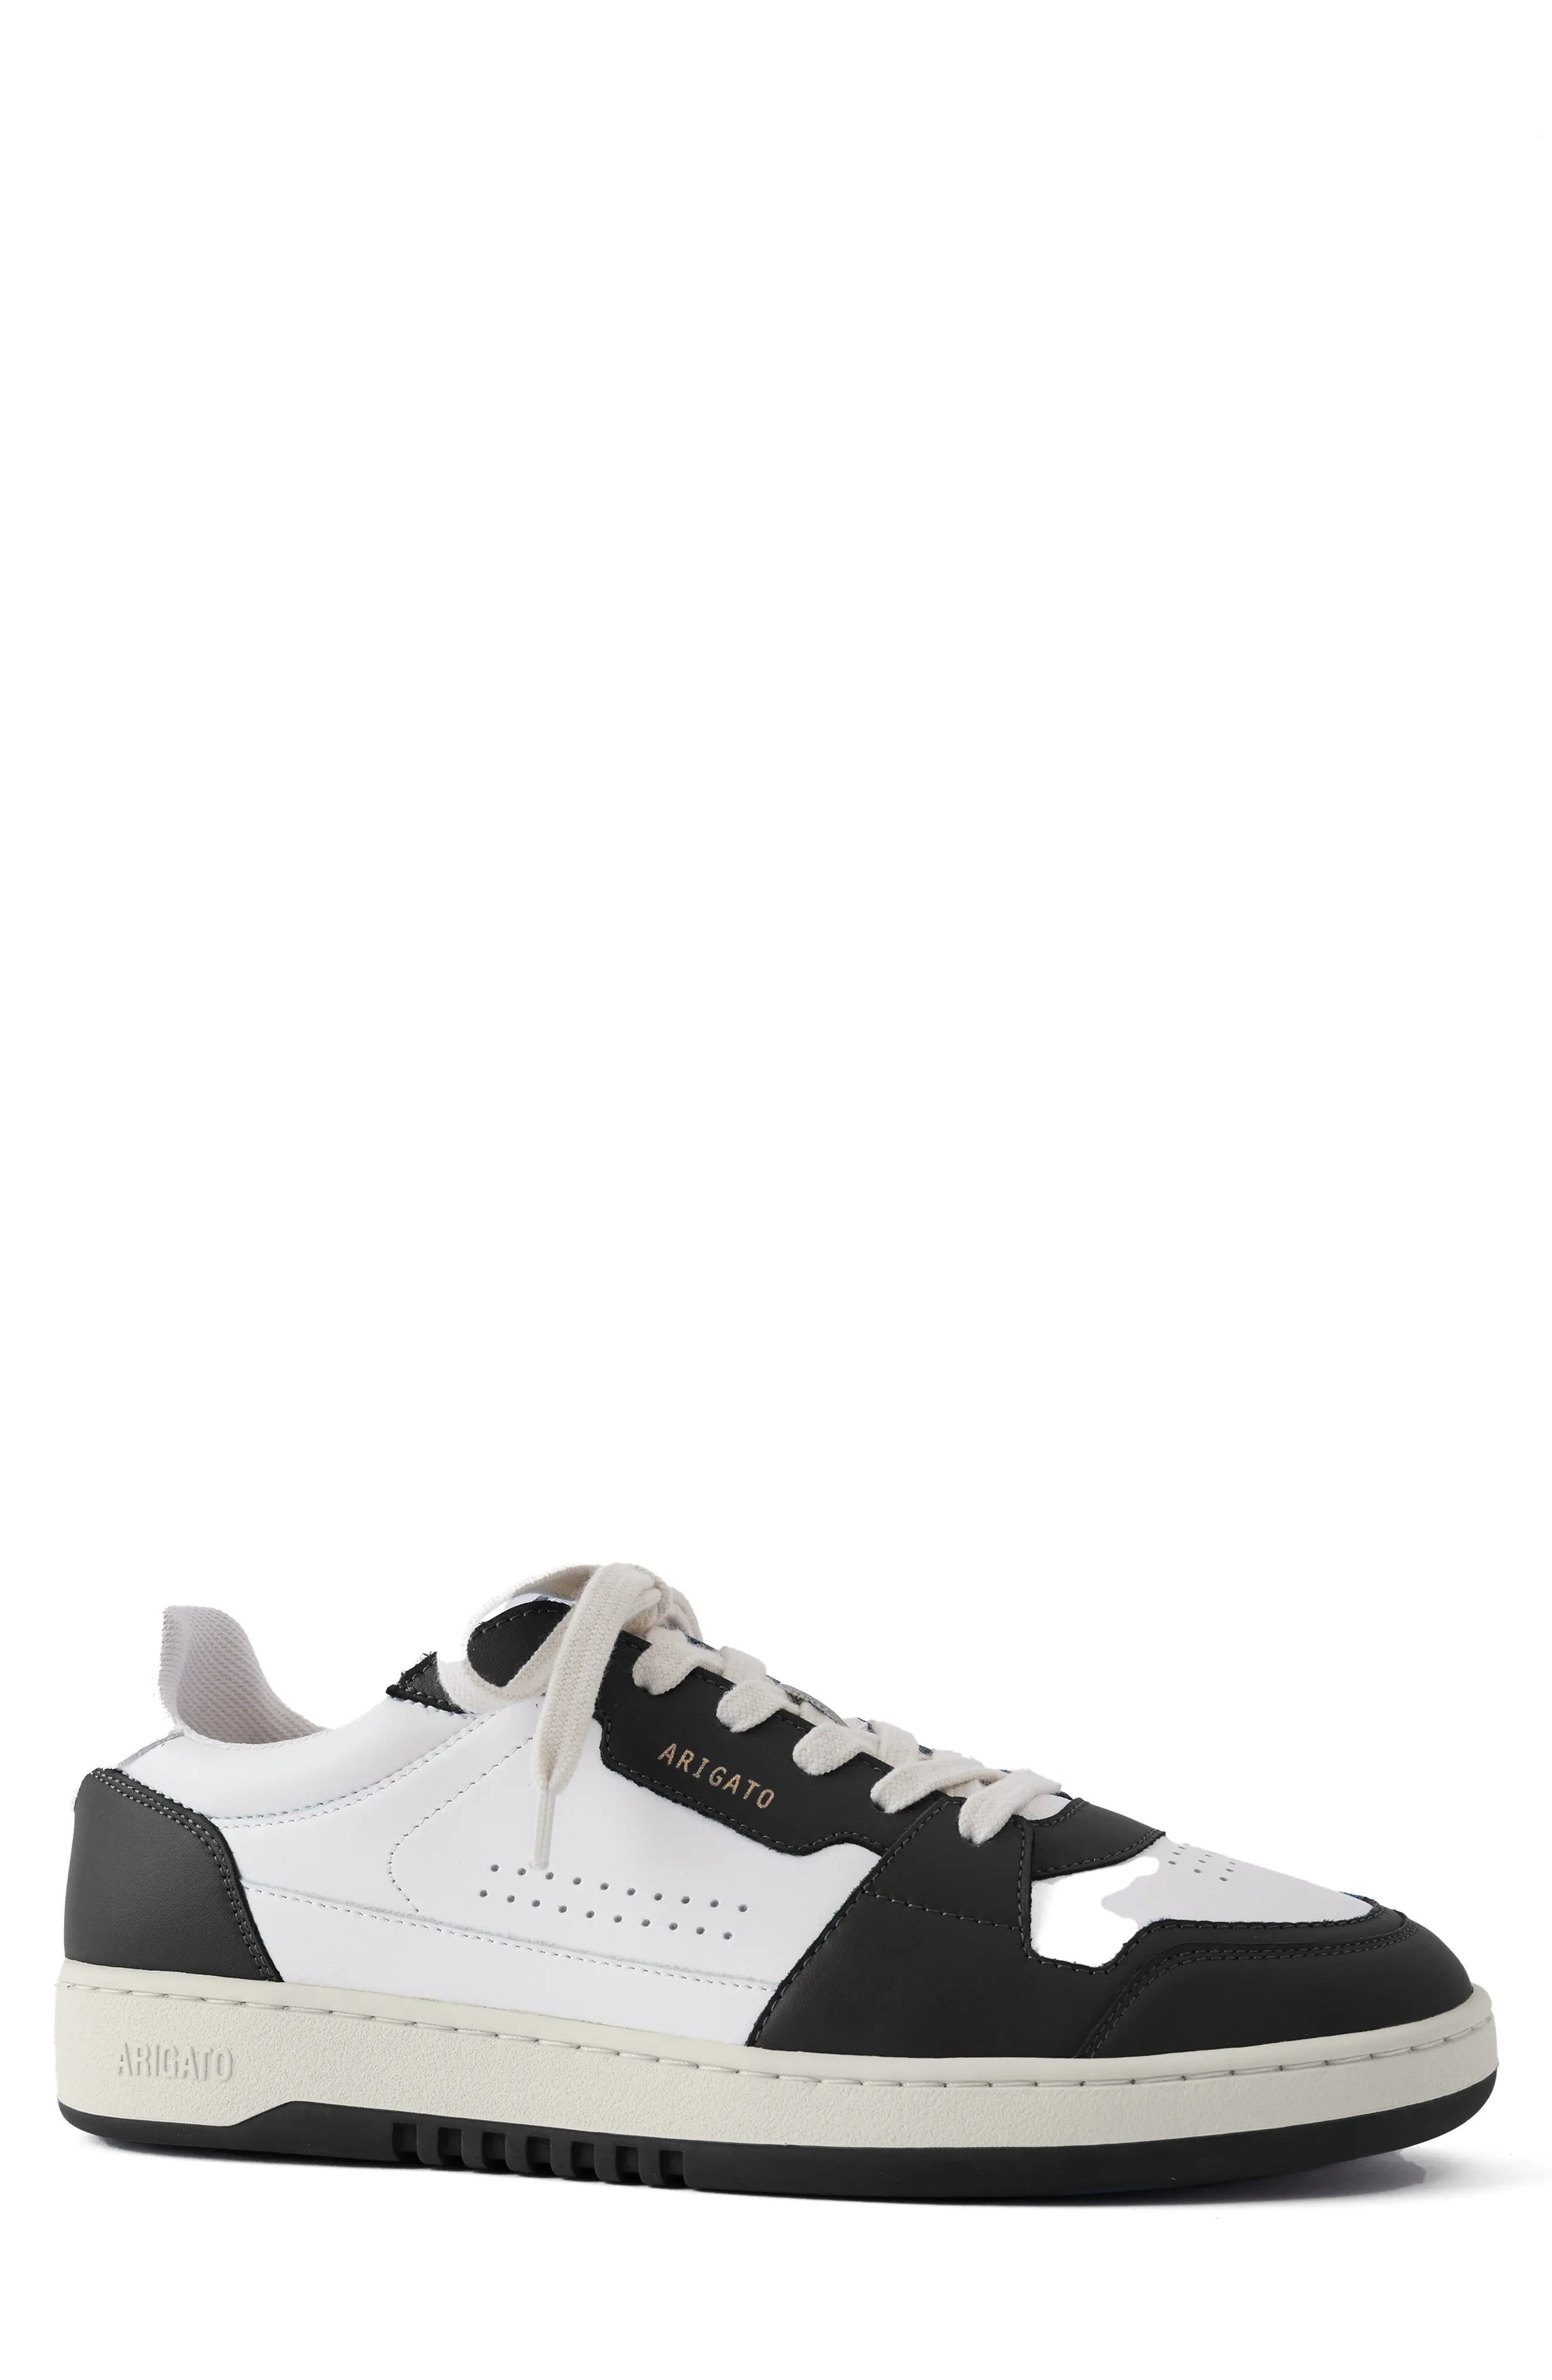 Dice Lo Sneaker in White/Black - 1